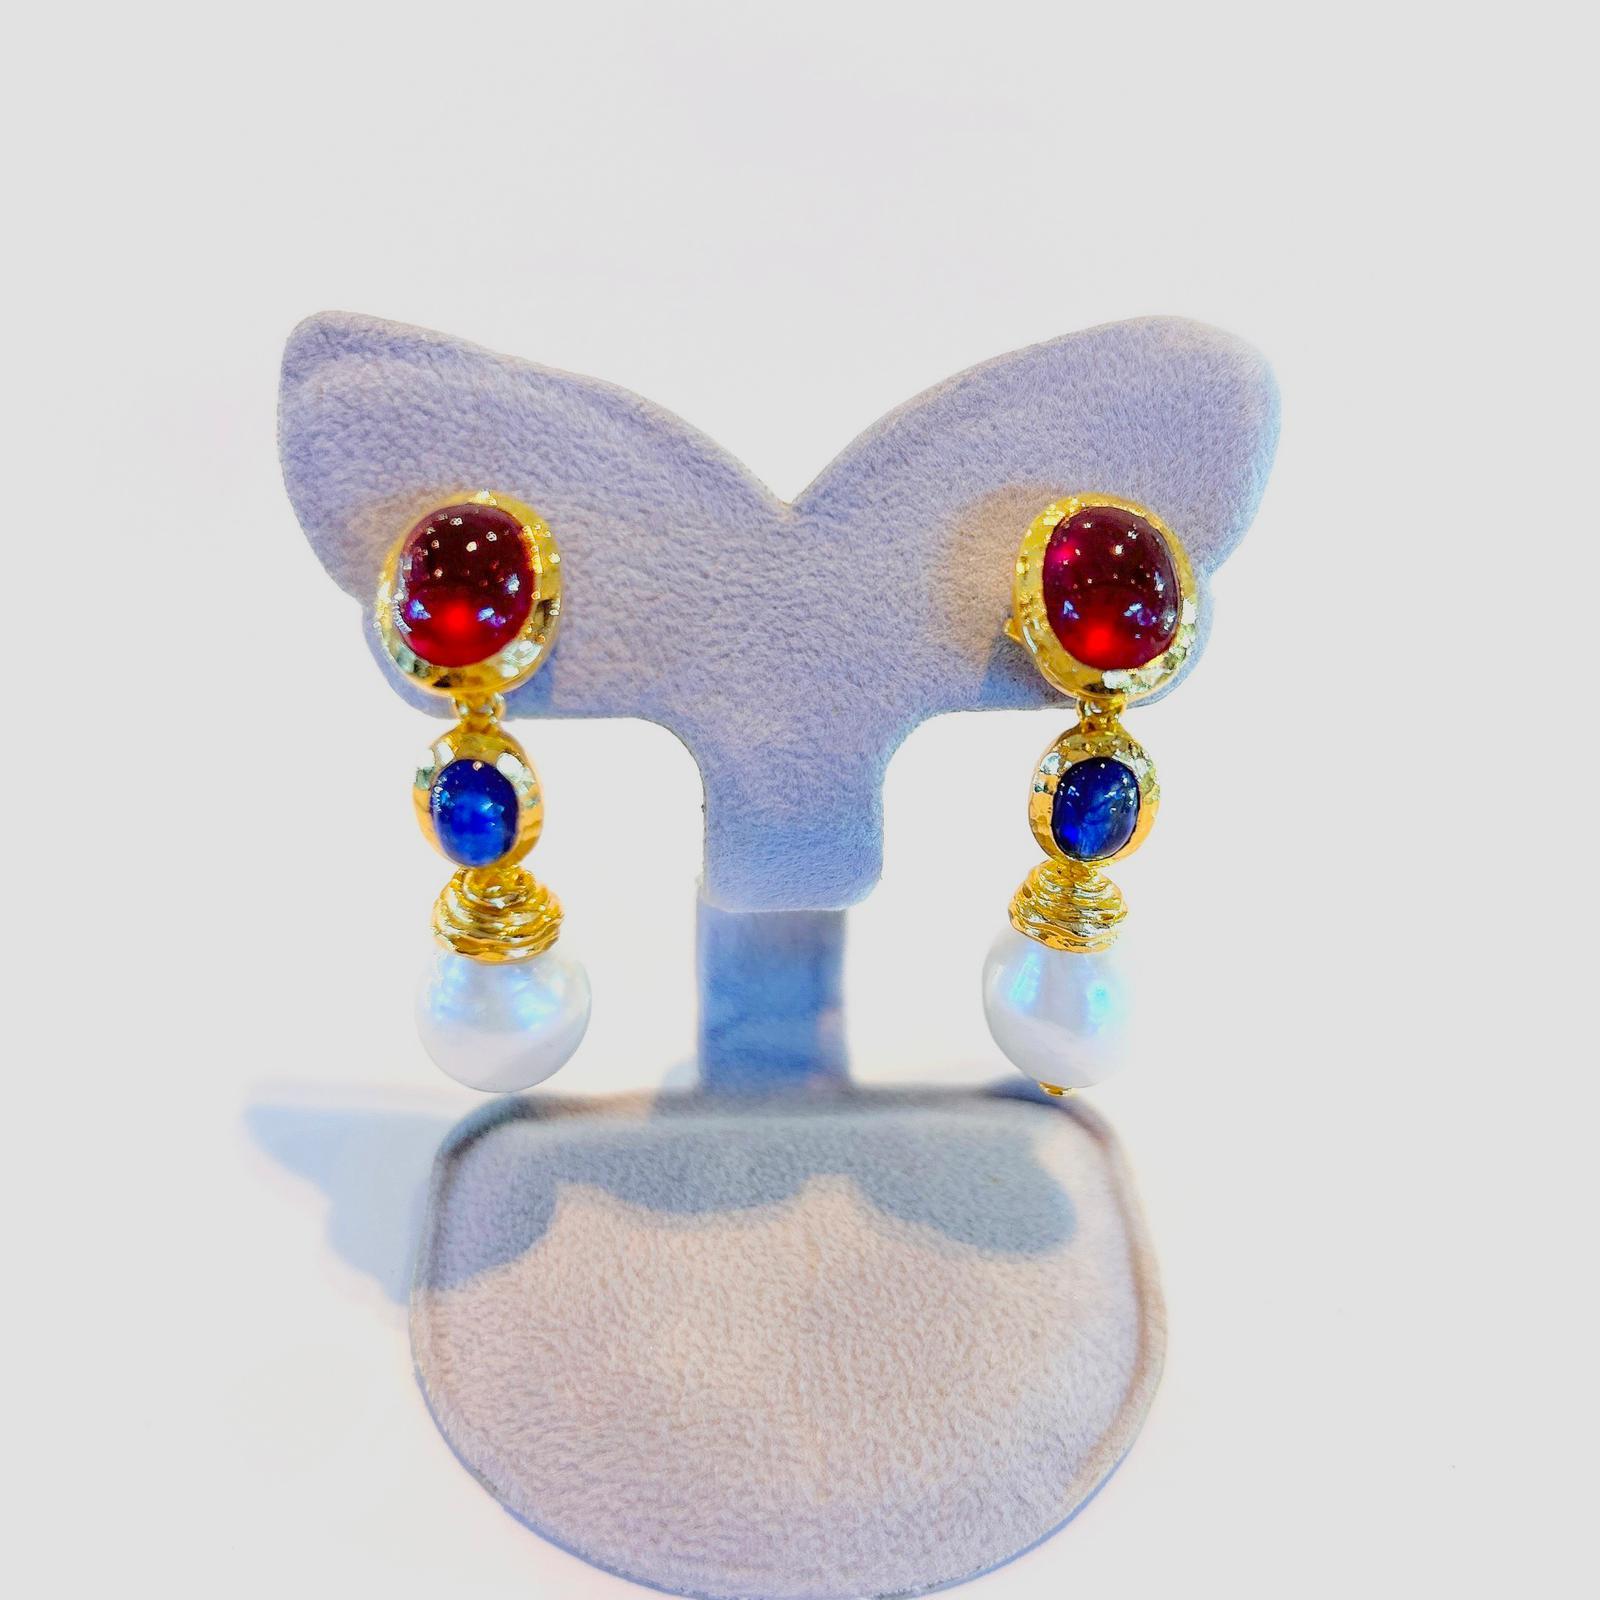 Bochic “Capri” Red Ruby & Blue Sapphire Earrings Set in 22k Gold & Silver For Sale 1